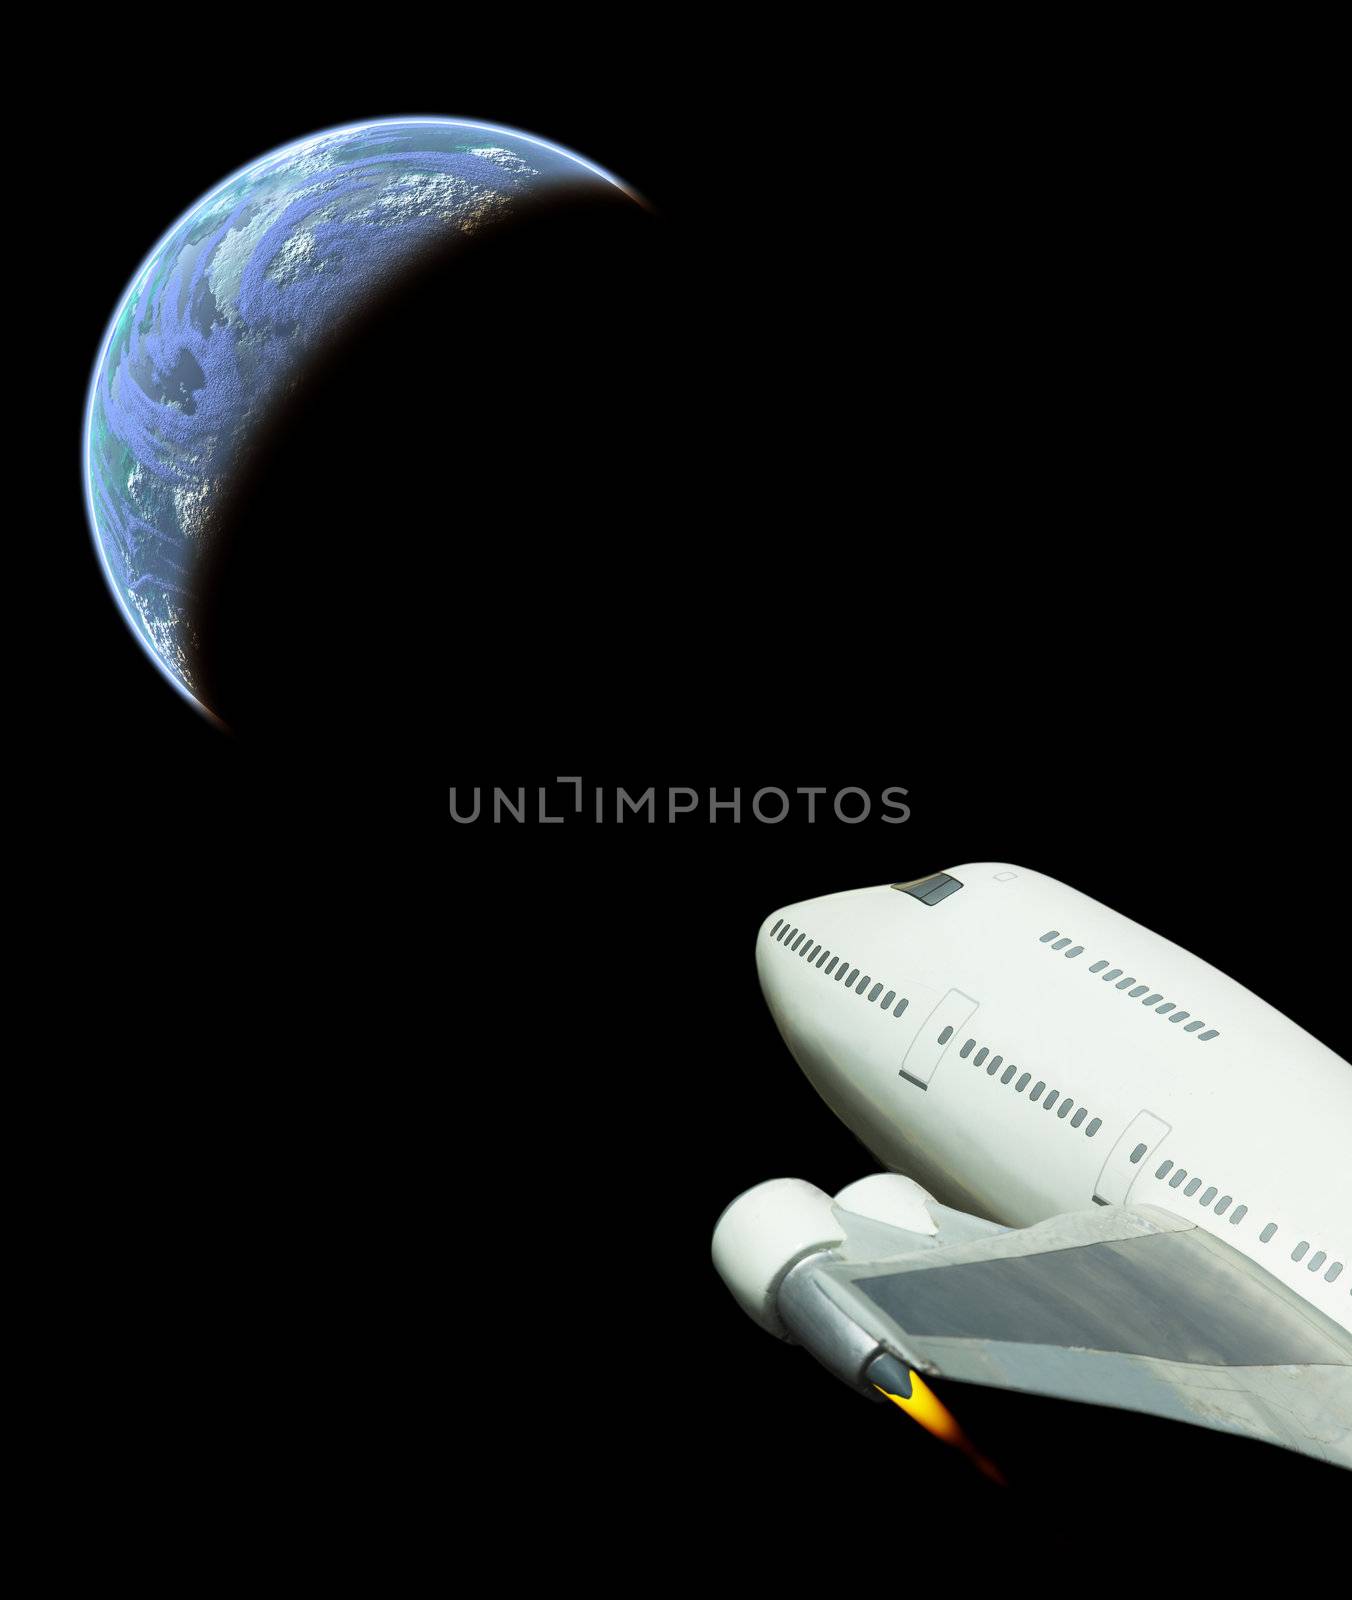 Rocket jumbo jet in space flight back to earth